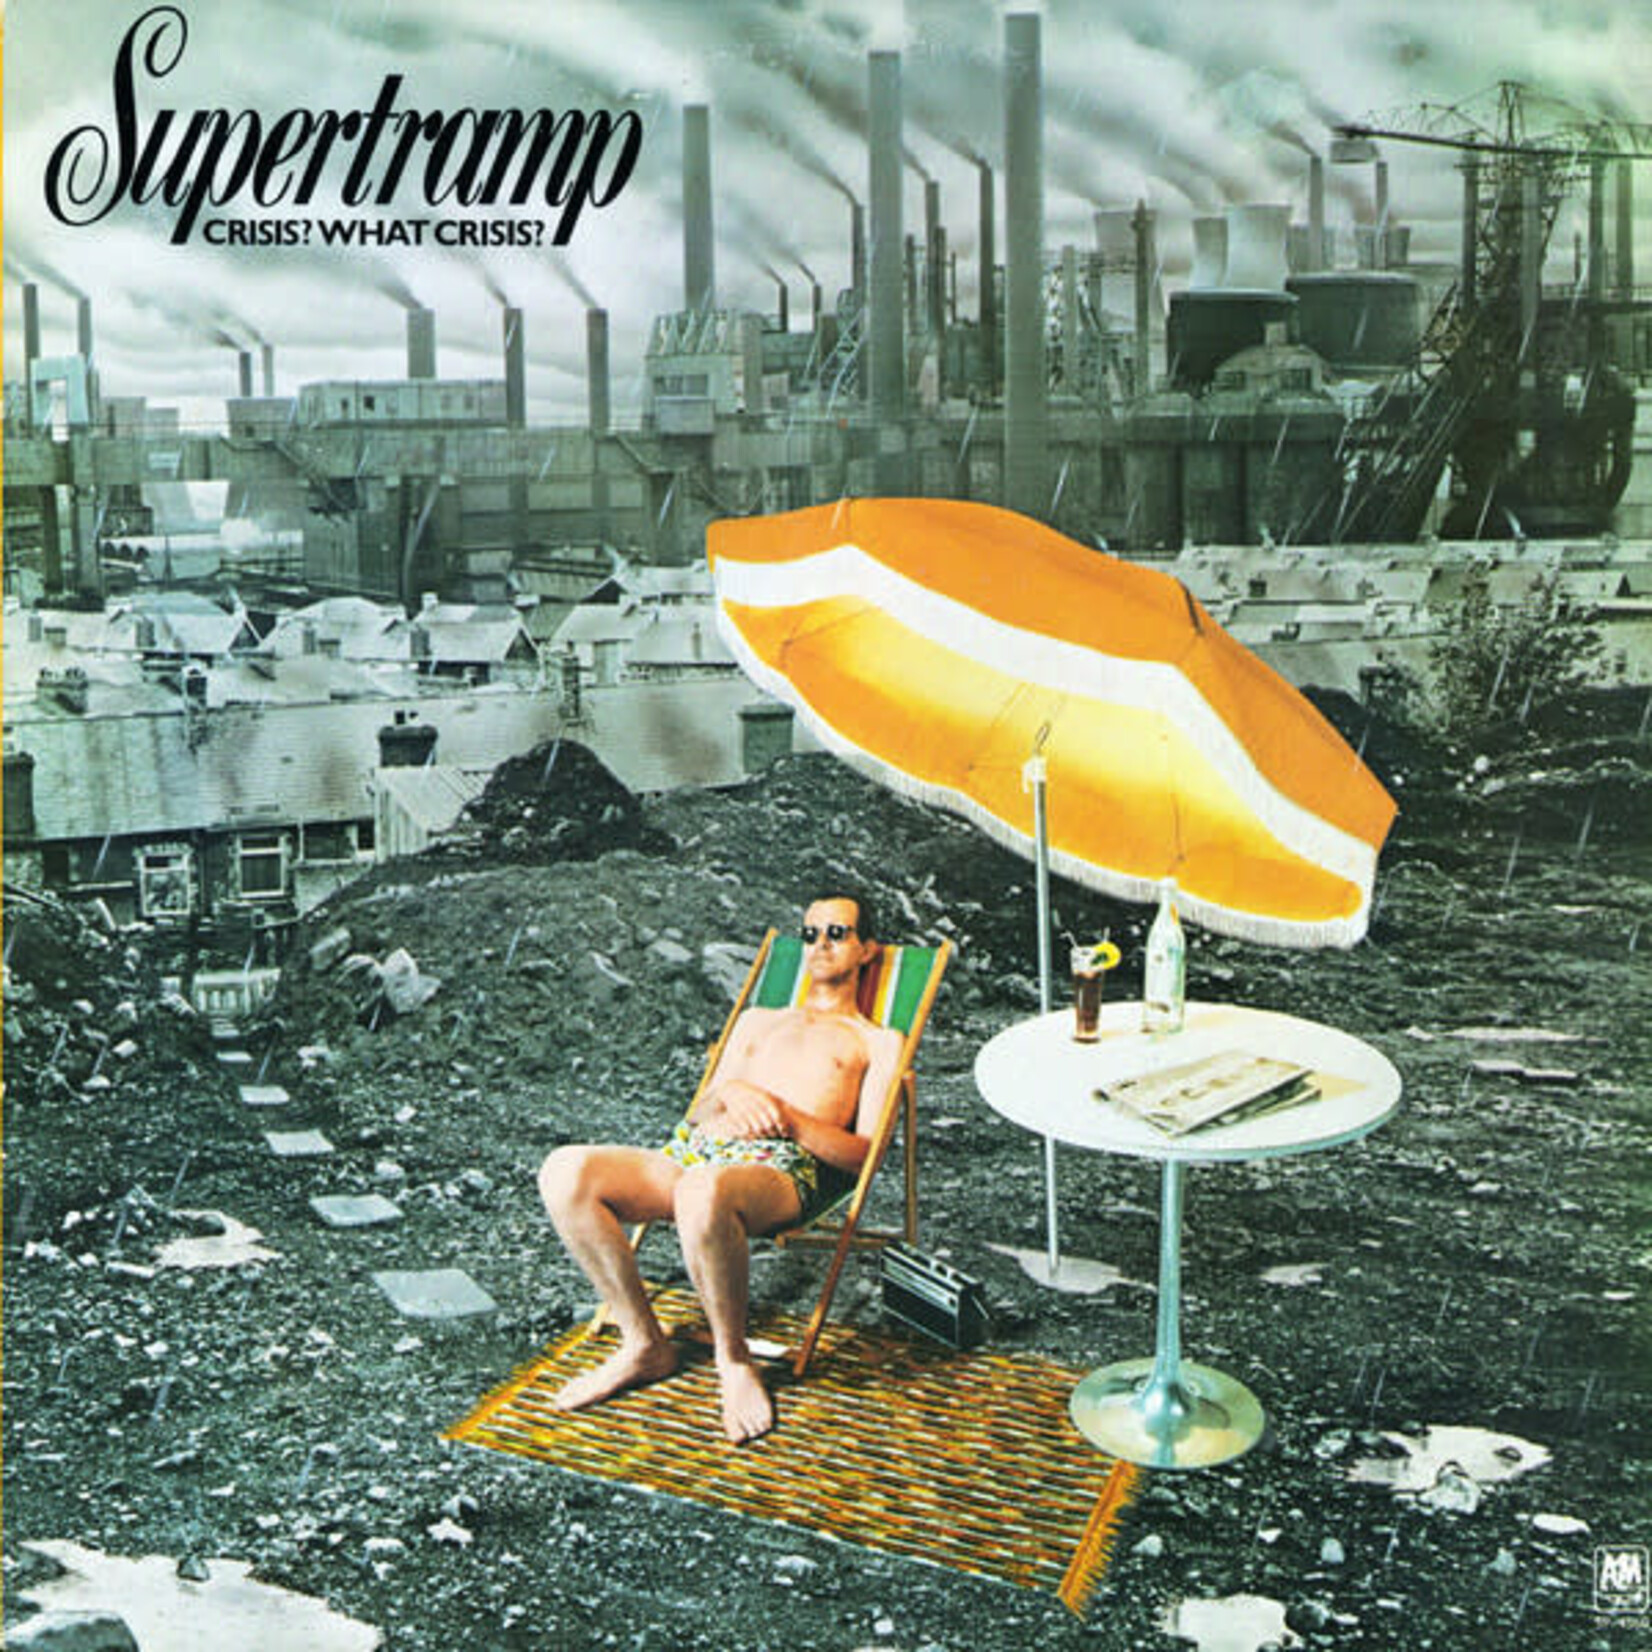 Supertramp Supertramp – Crisis? What Crisis? (VG, 1975, LP, A&M Records – SP-4560)